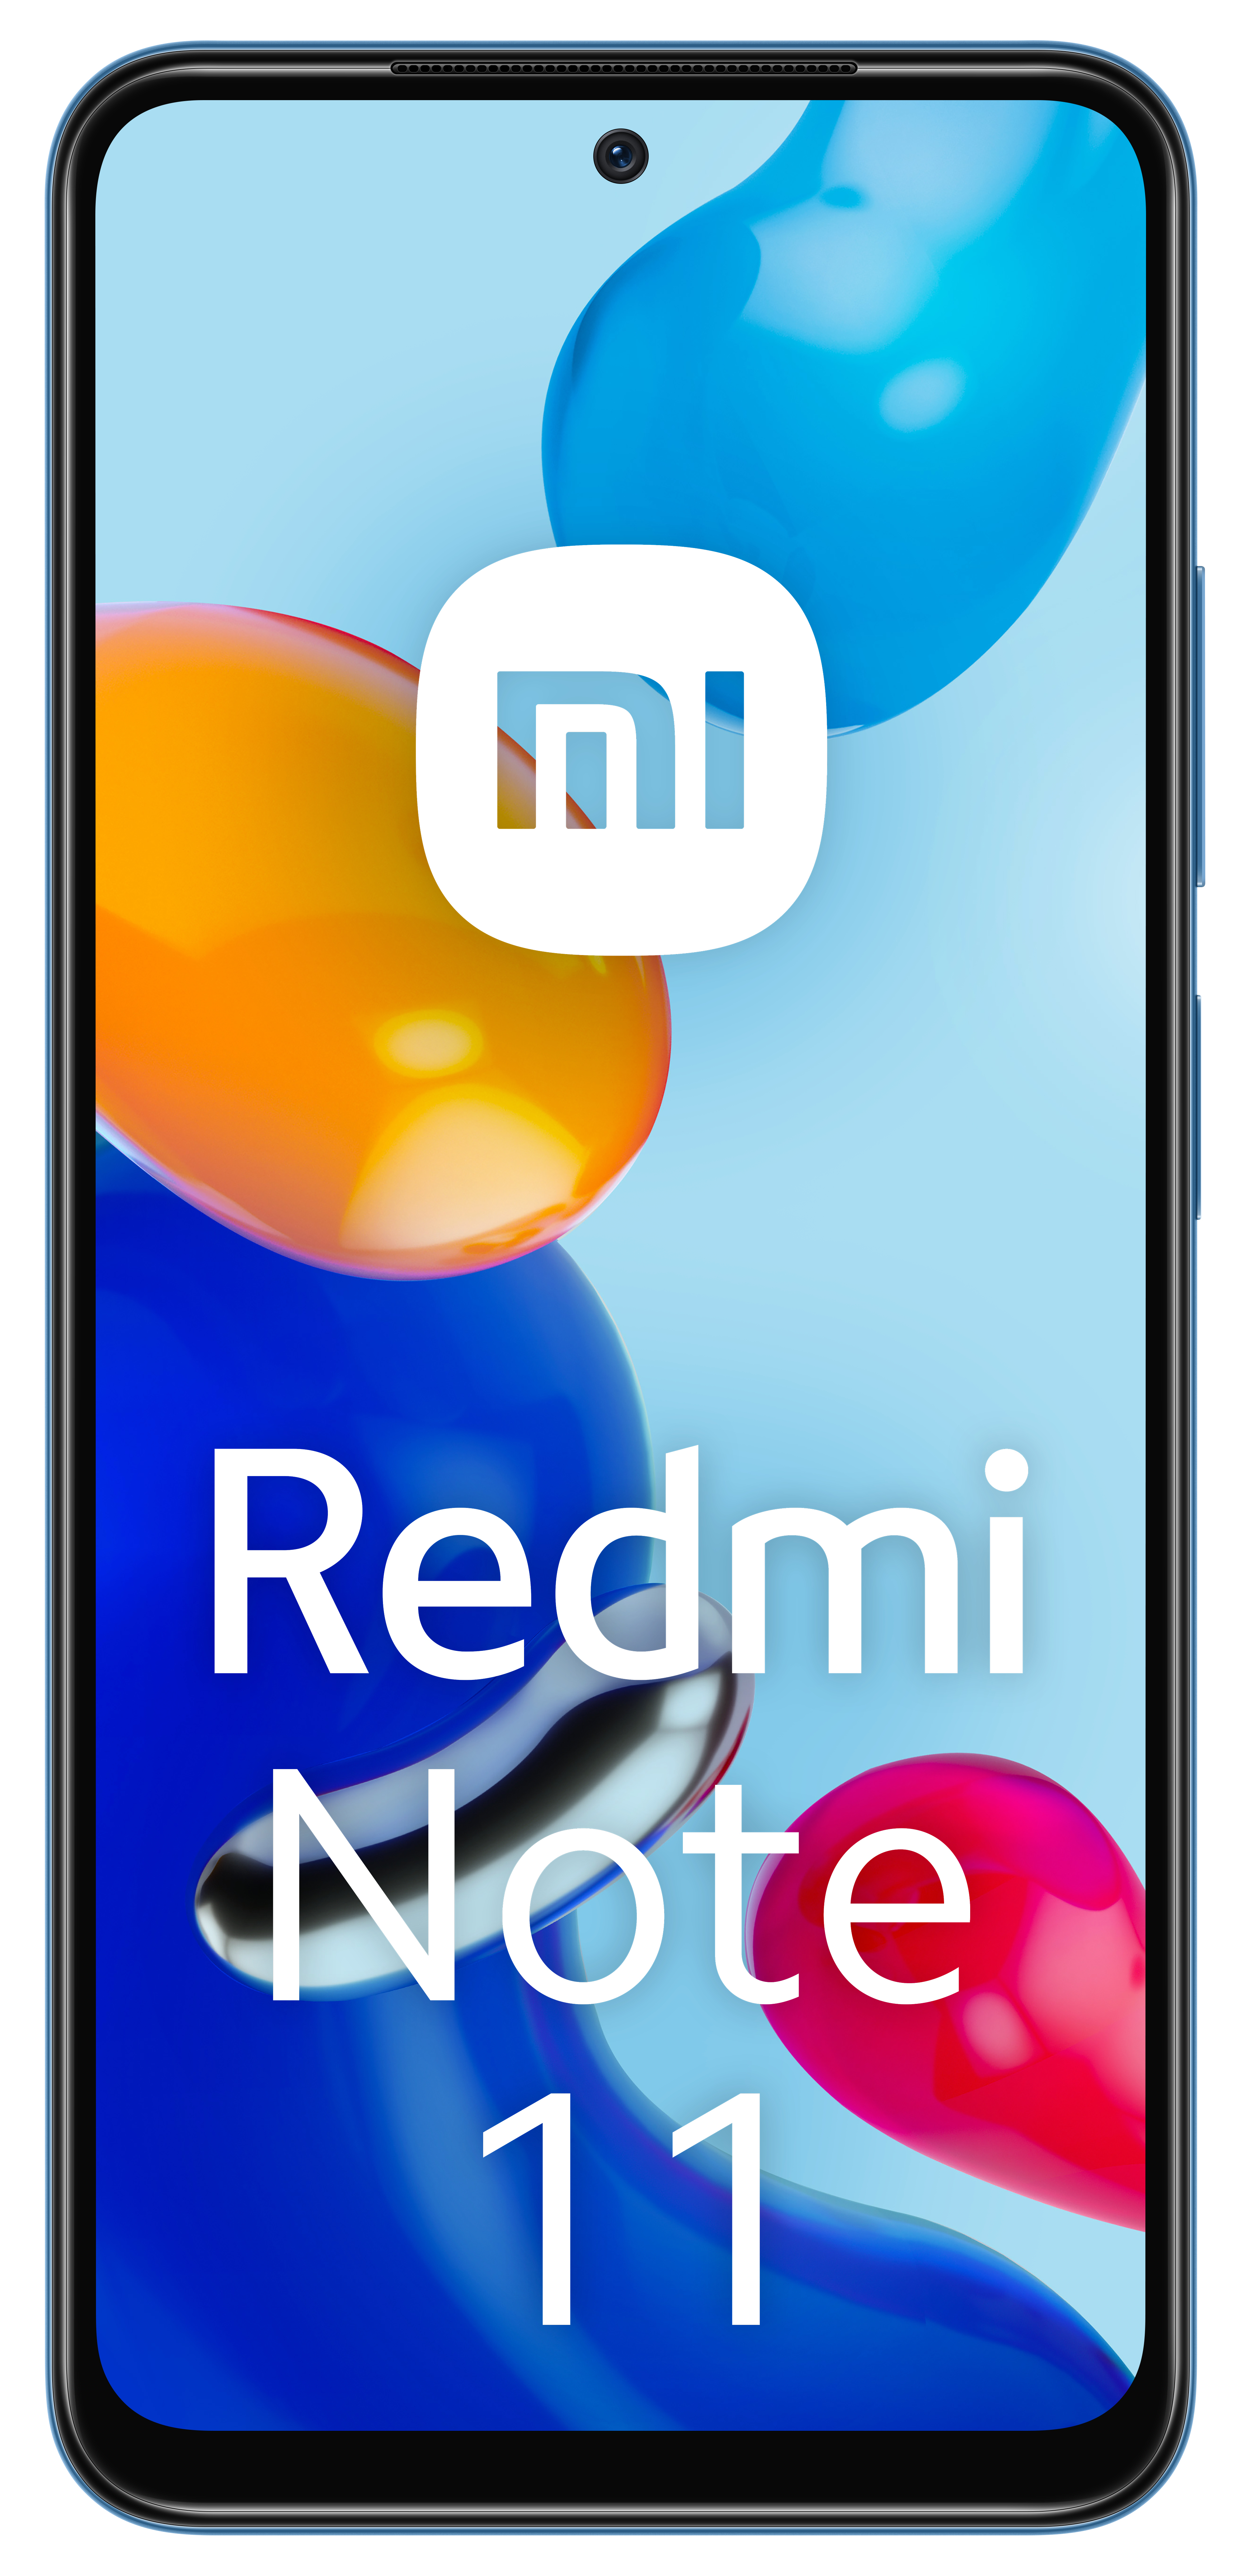 Xiaomi Note 11